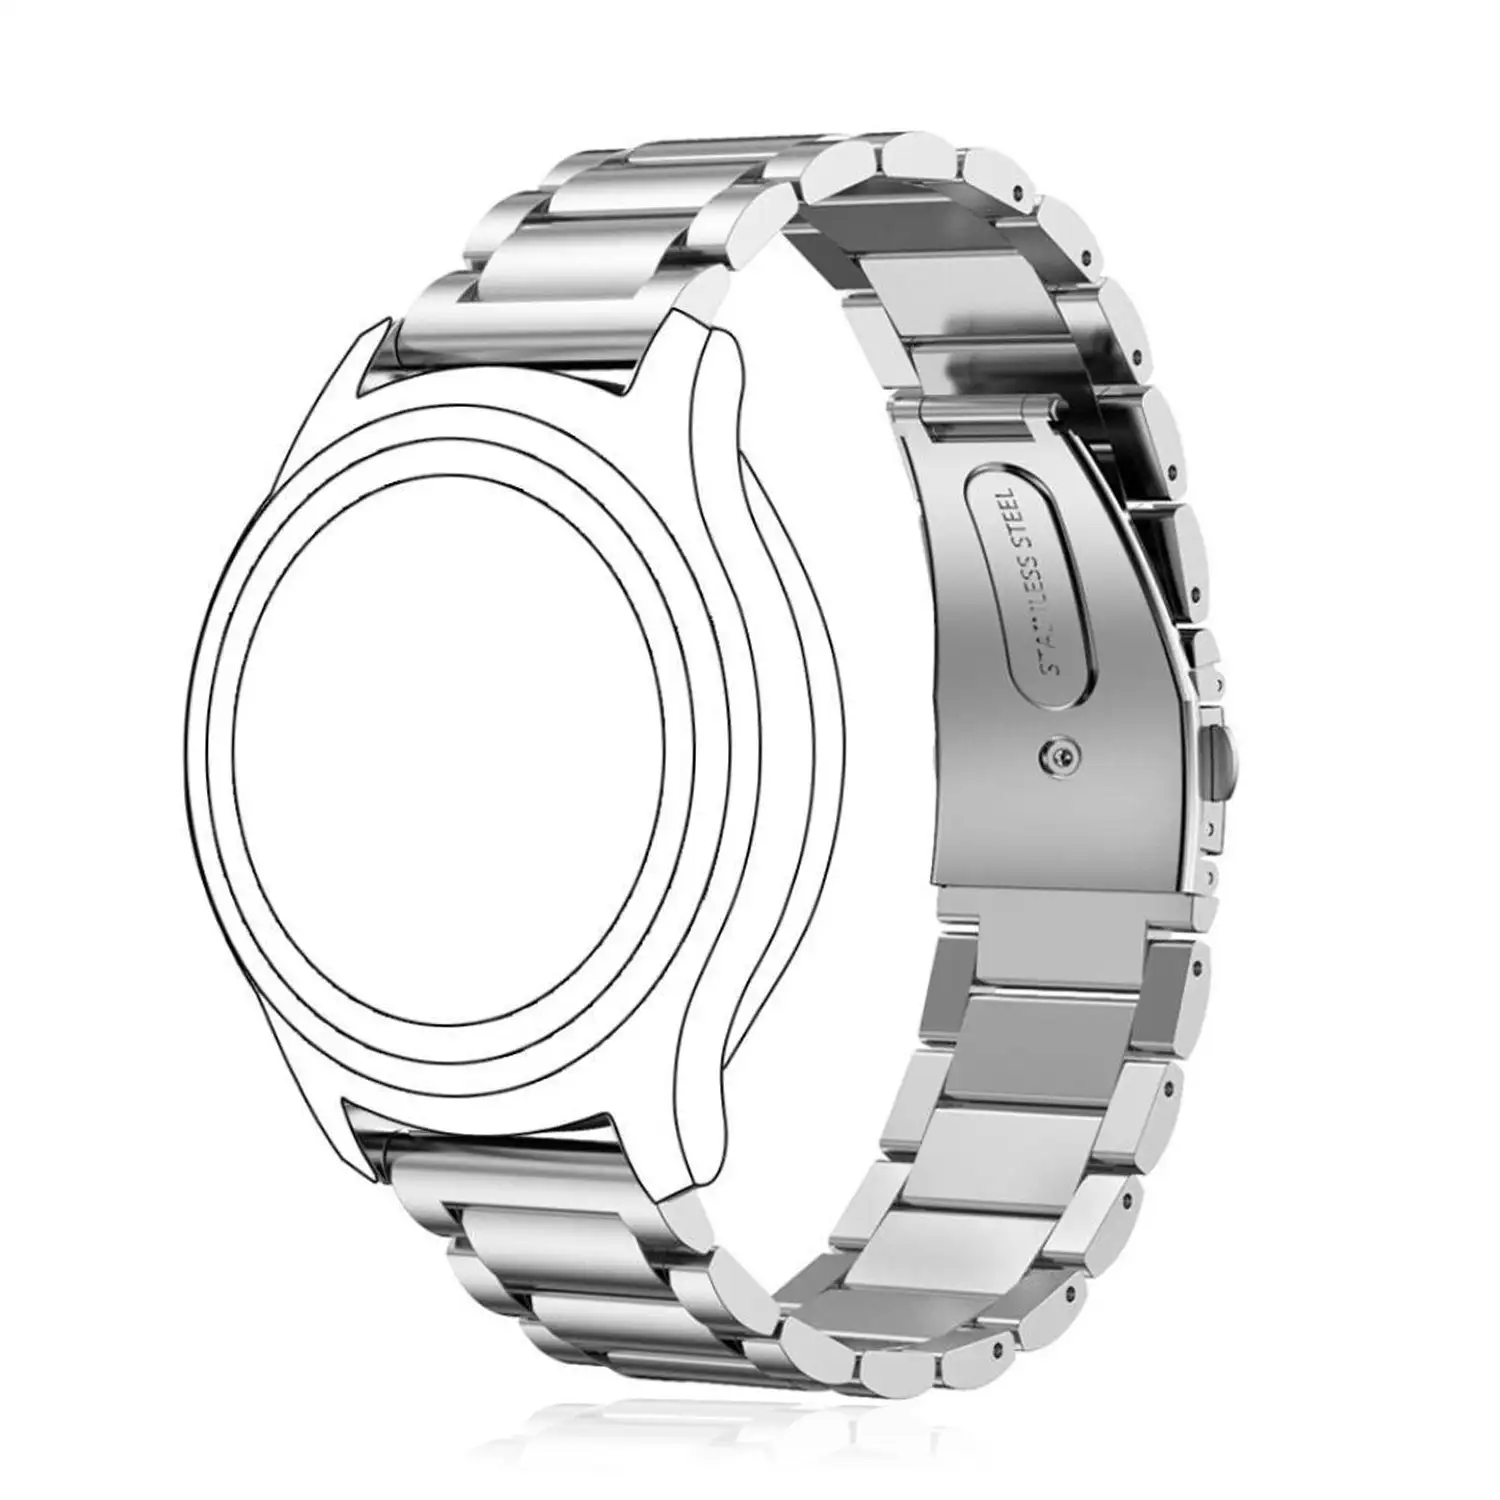 Correa universal de acero inoxidable para relojes de 20mm.Sistema Quick Release de fácil cambio.